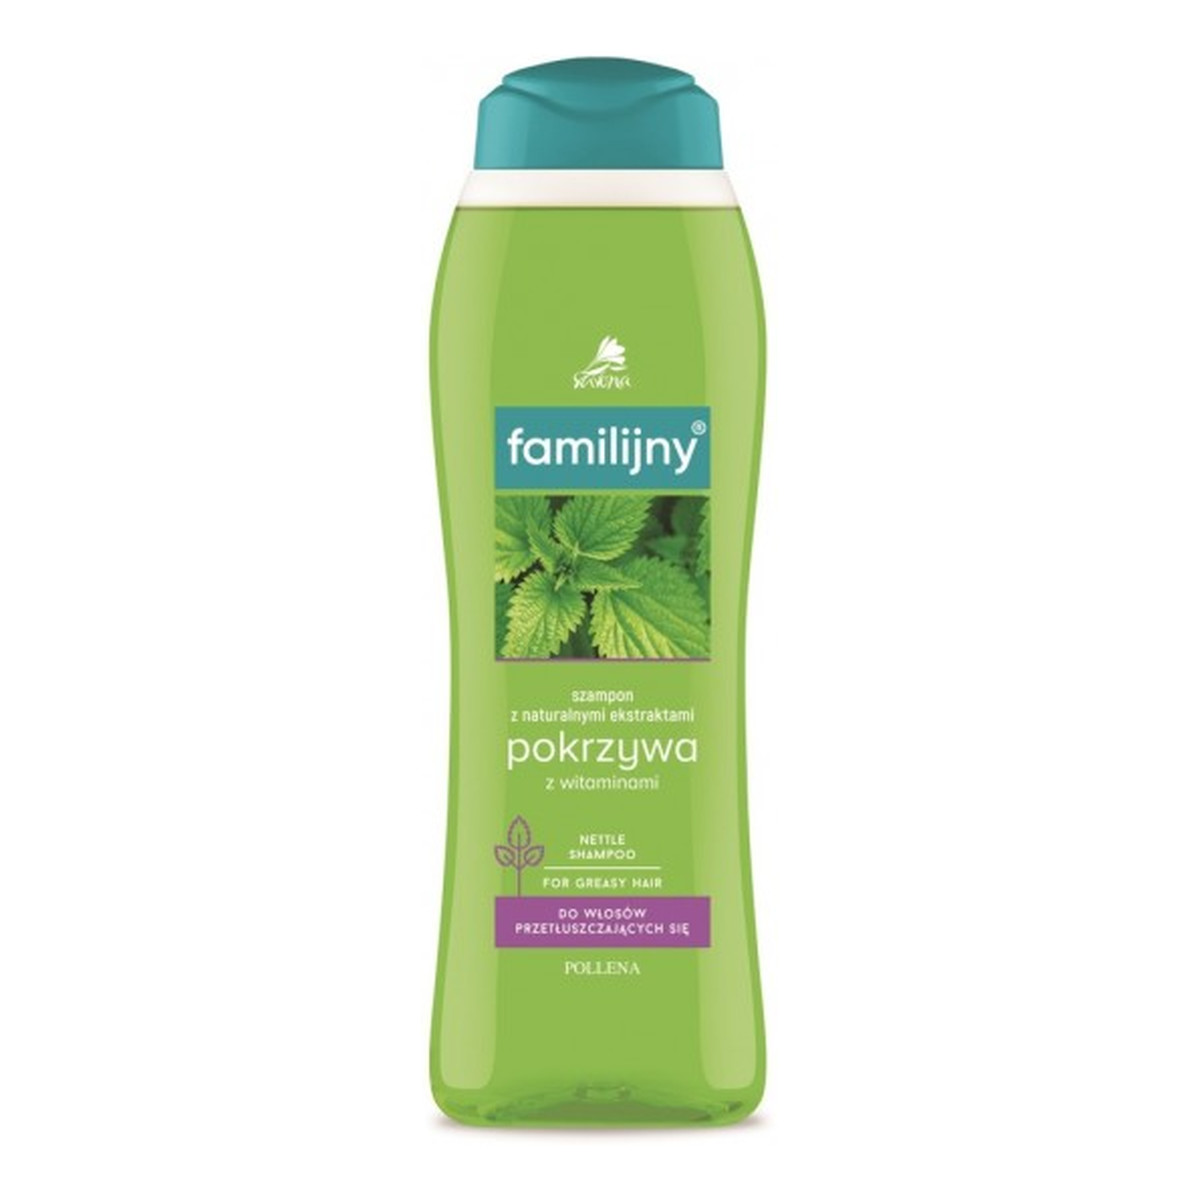 szampon familijny czy zdrowy